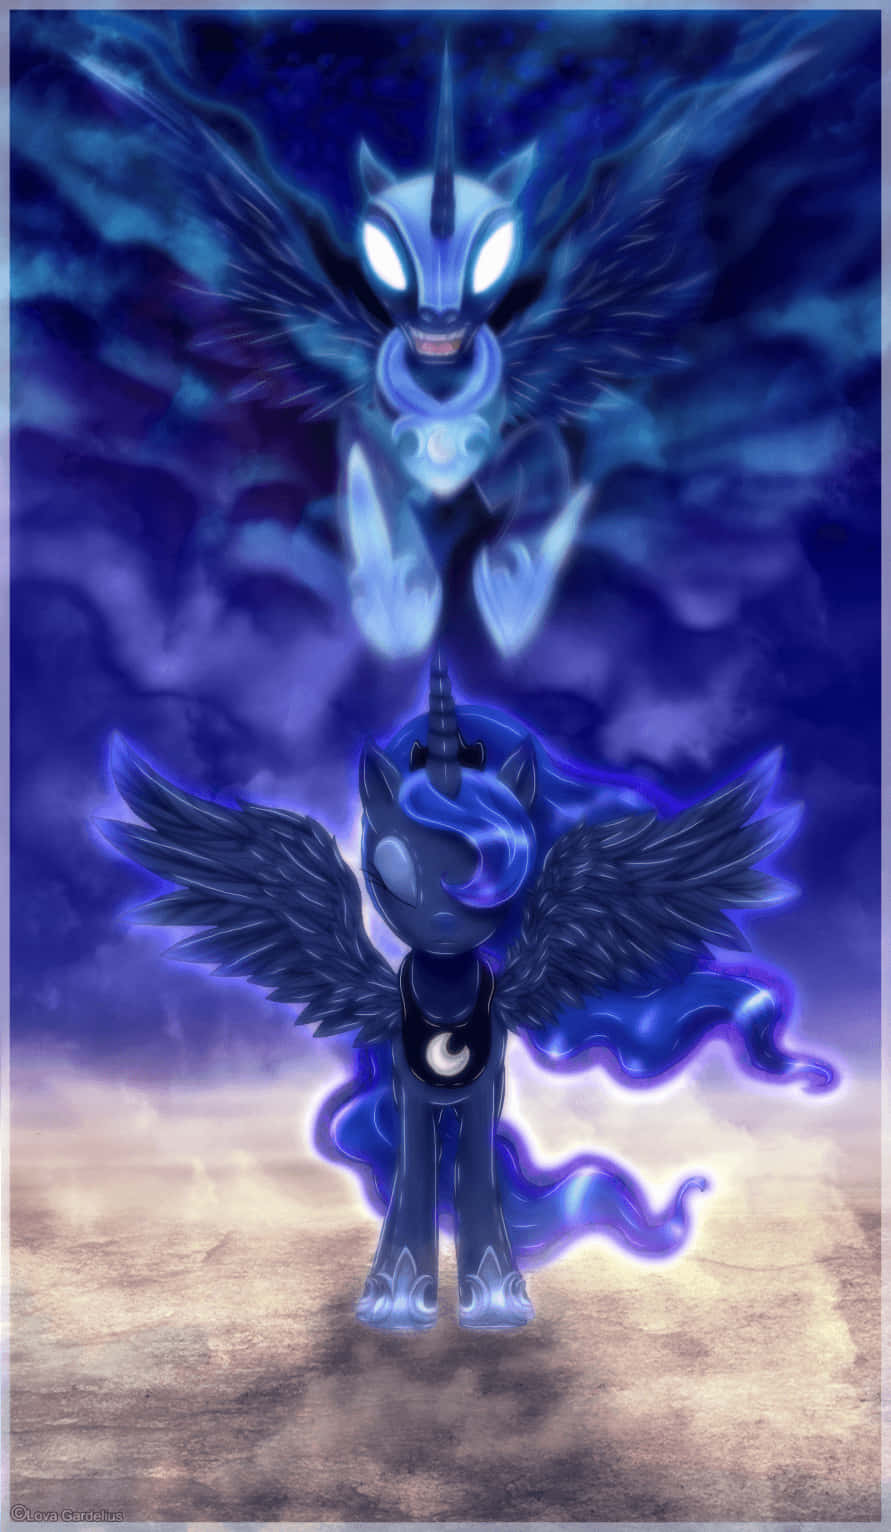 Luna Reborn As Nightmare Moon Wallpaper